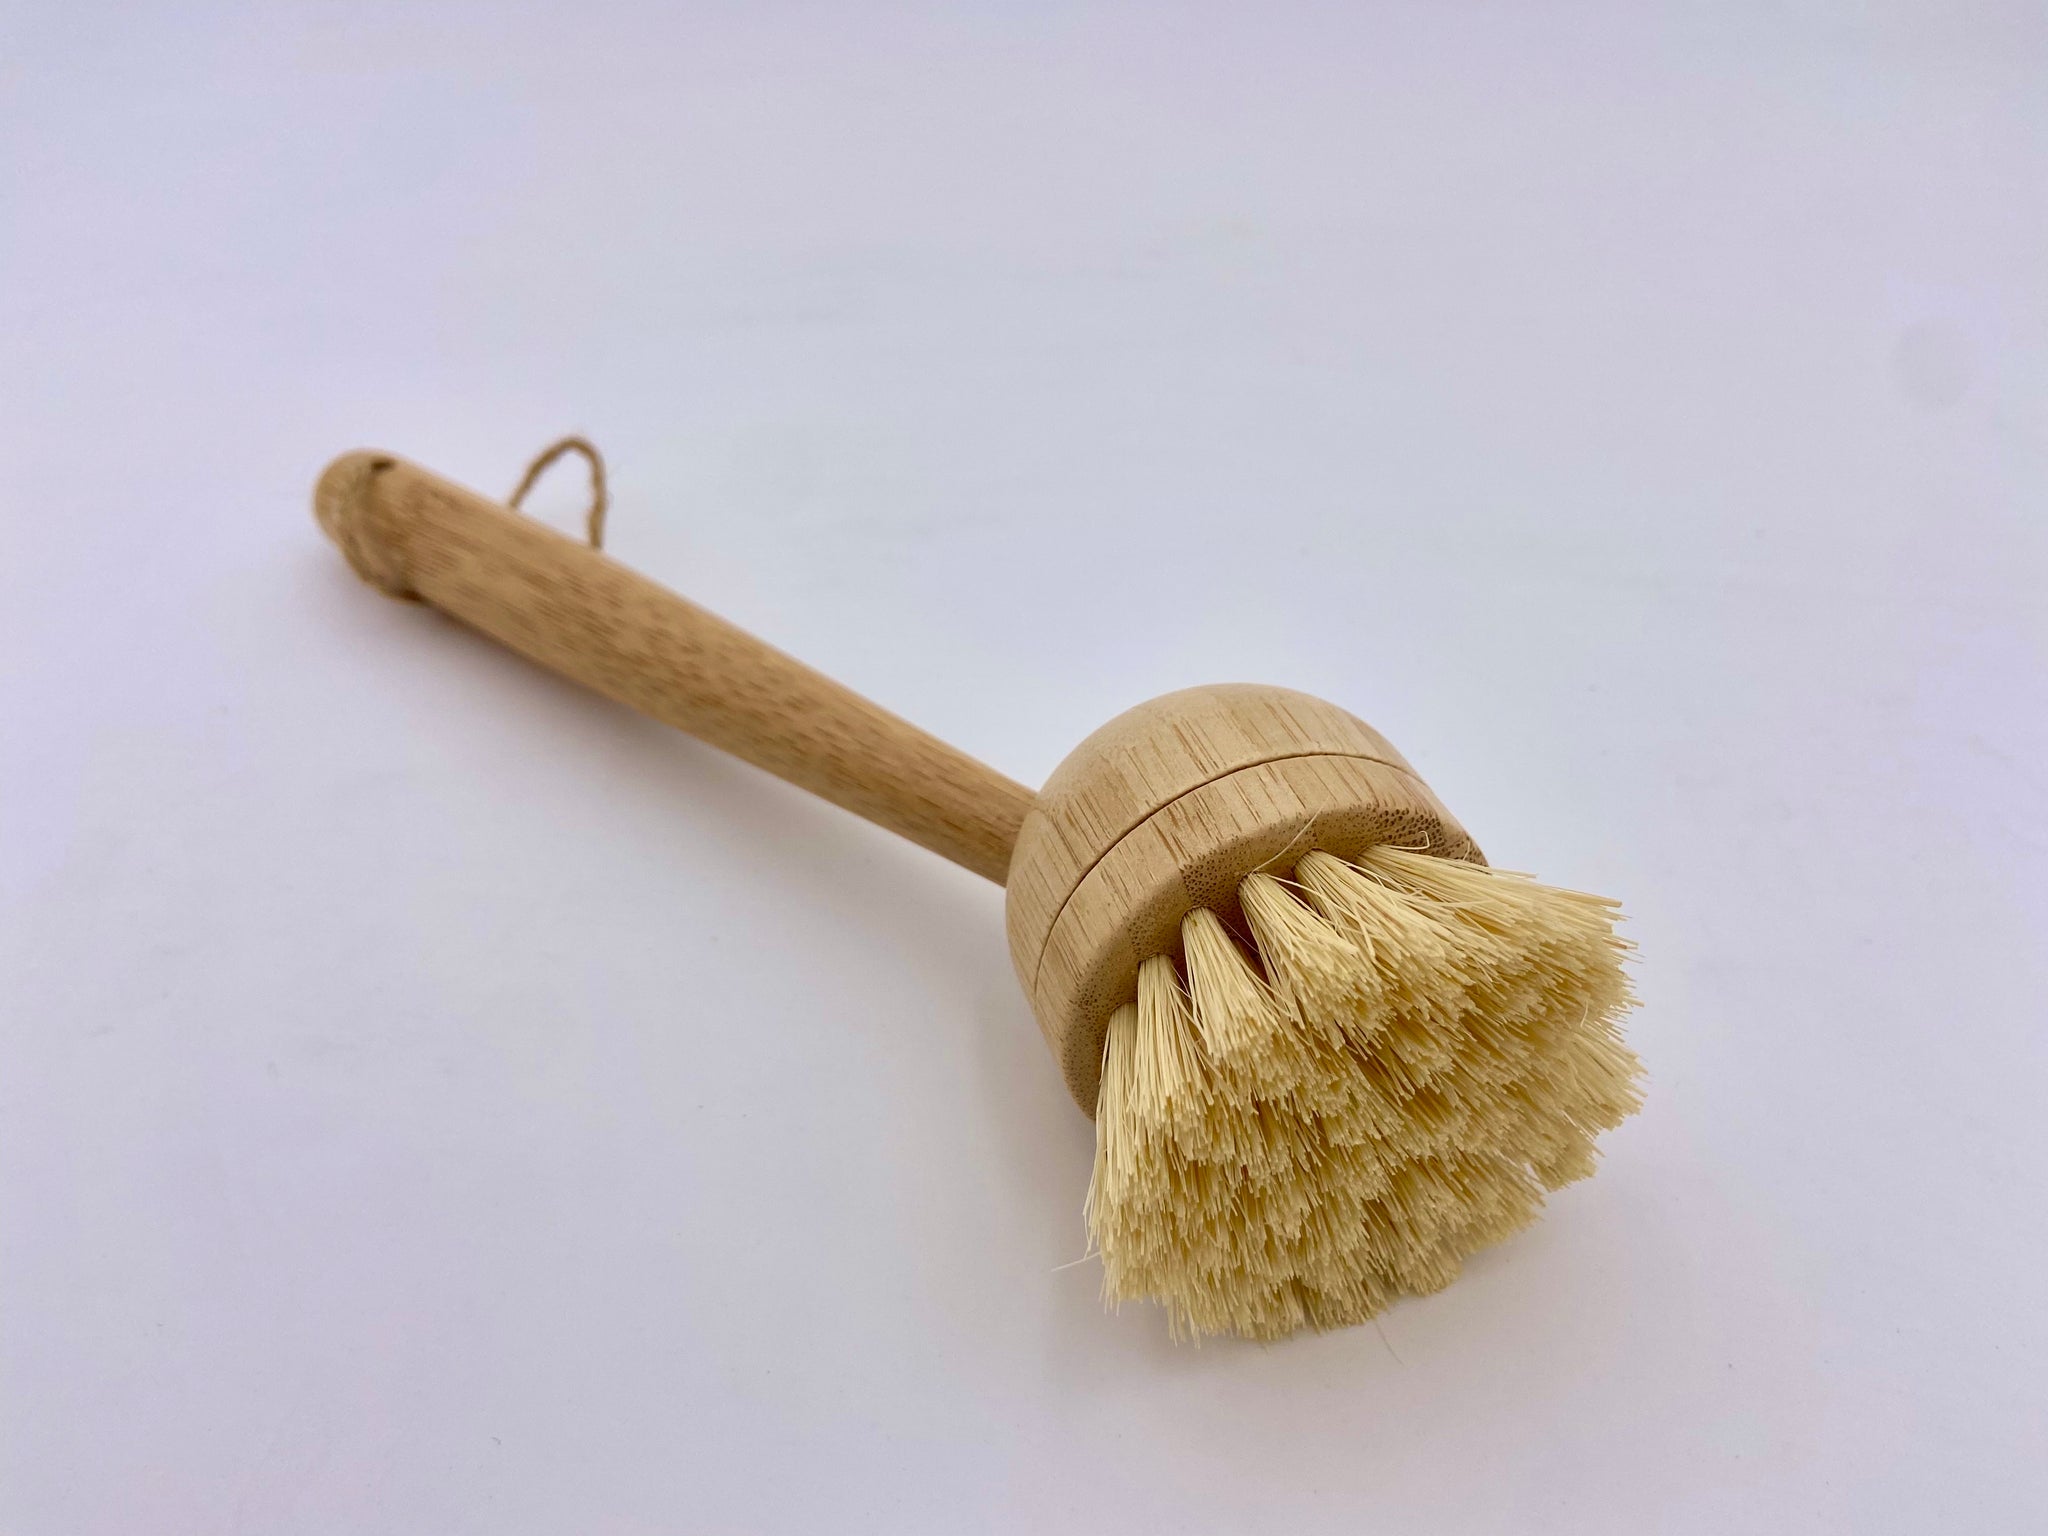 HOMcDALY Bamboo Dish Brush with ceramic Dish Brush Holder